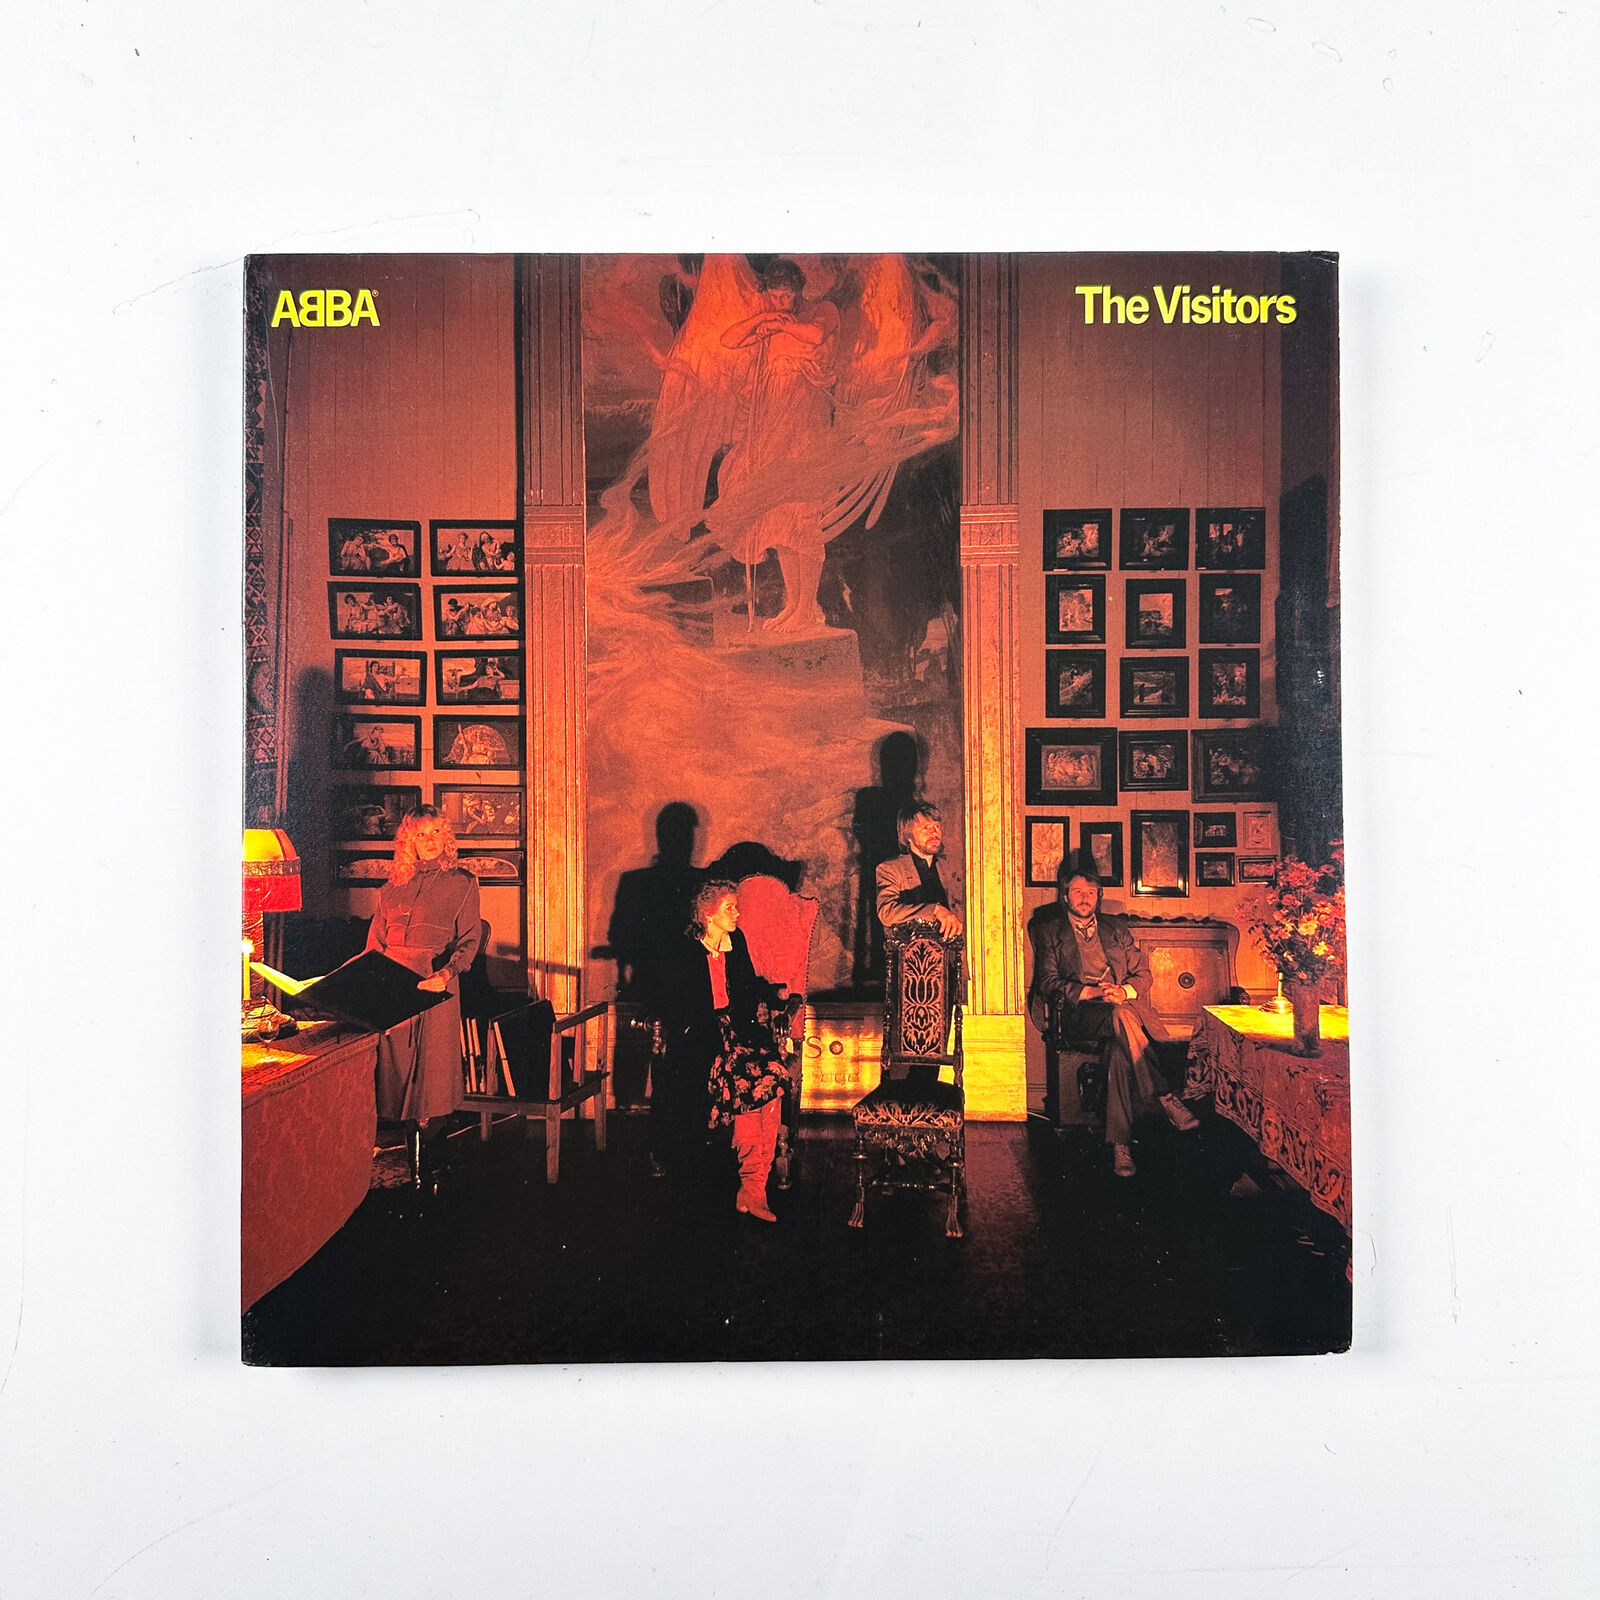 ABBA - The Visitors - Vinyl LP Record - 1981